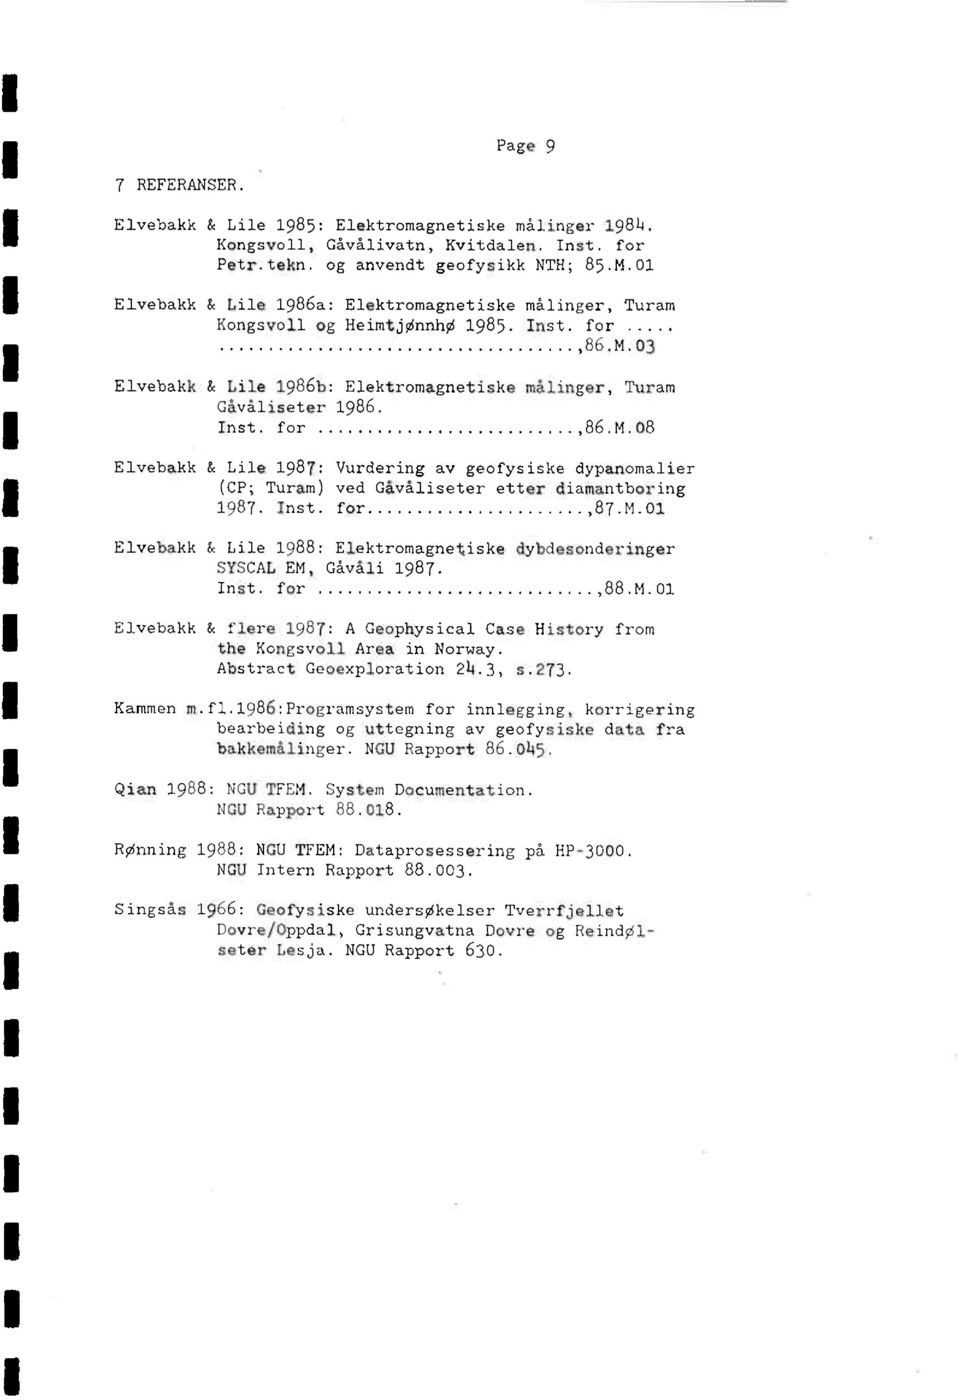 Inst. for 87.M.01 Elvebakk & Lile 1988: Elektromagnetiske dybdesonderinger SYSCAL EM, Gåvåli 1987. Inst. for,88.m.01 Elvehakk & flere 1987: A Geophysical Case History from the Kongsvoll Area in Norway.